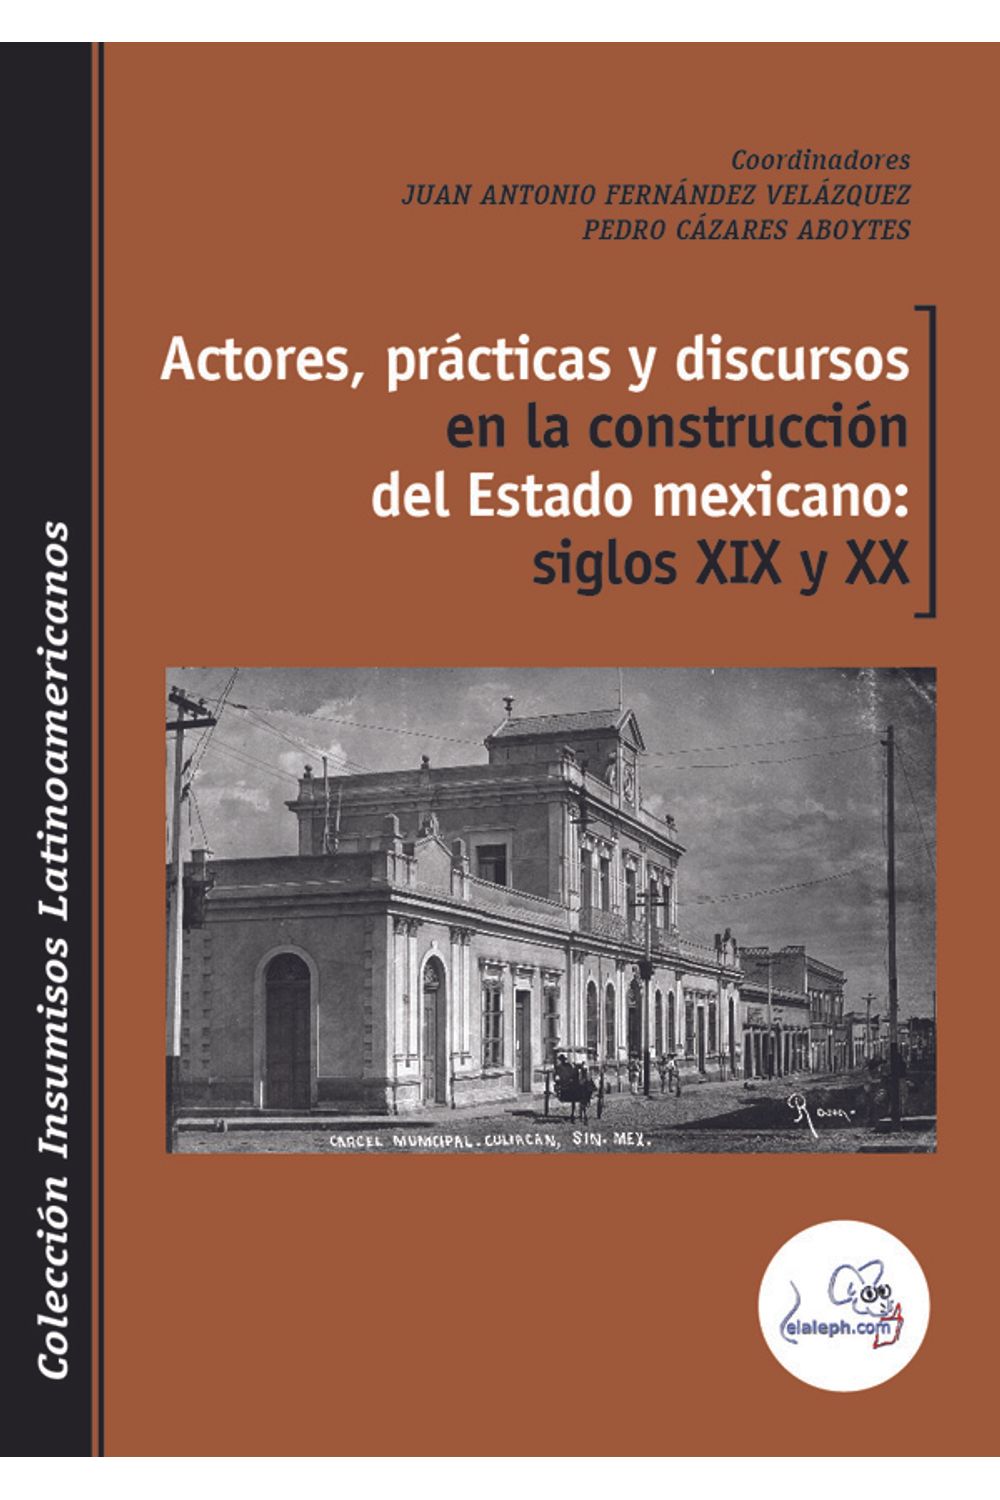 bm-actores-practicas-y-discursos-en-la-construccion-del-estado-mexicano-siglos-xix-y-xx-elalephcom-9789873990359